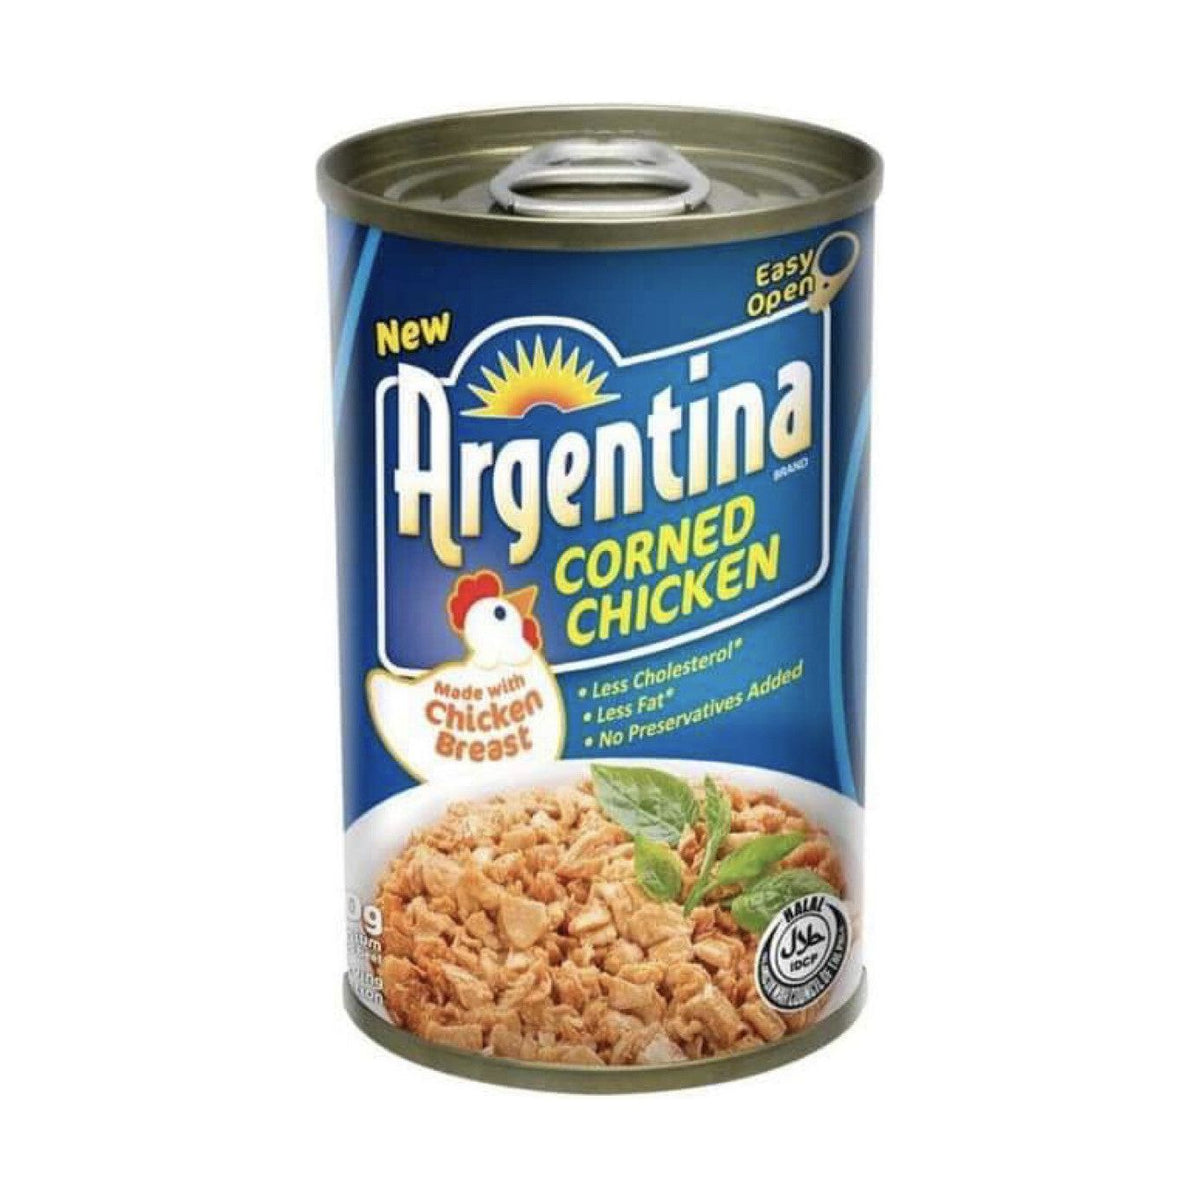 Argentina Corned Chicken 150g